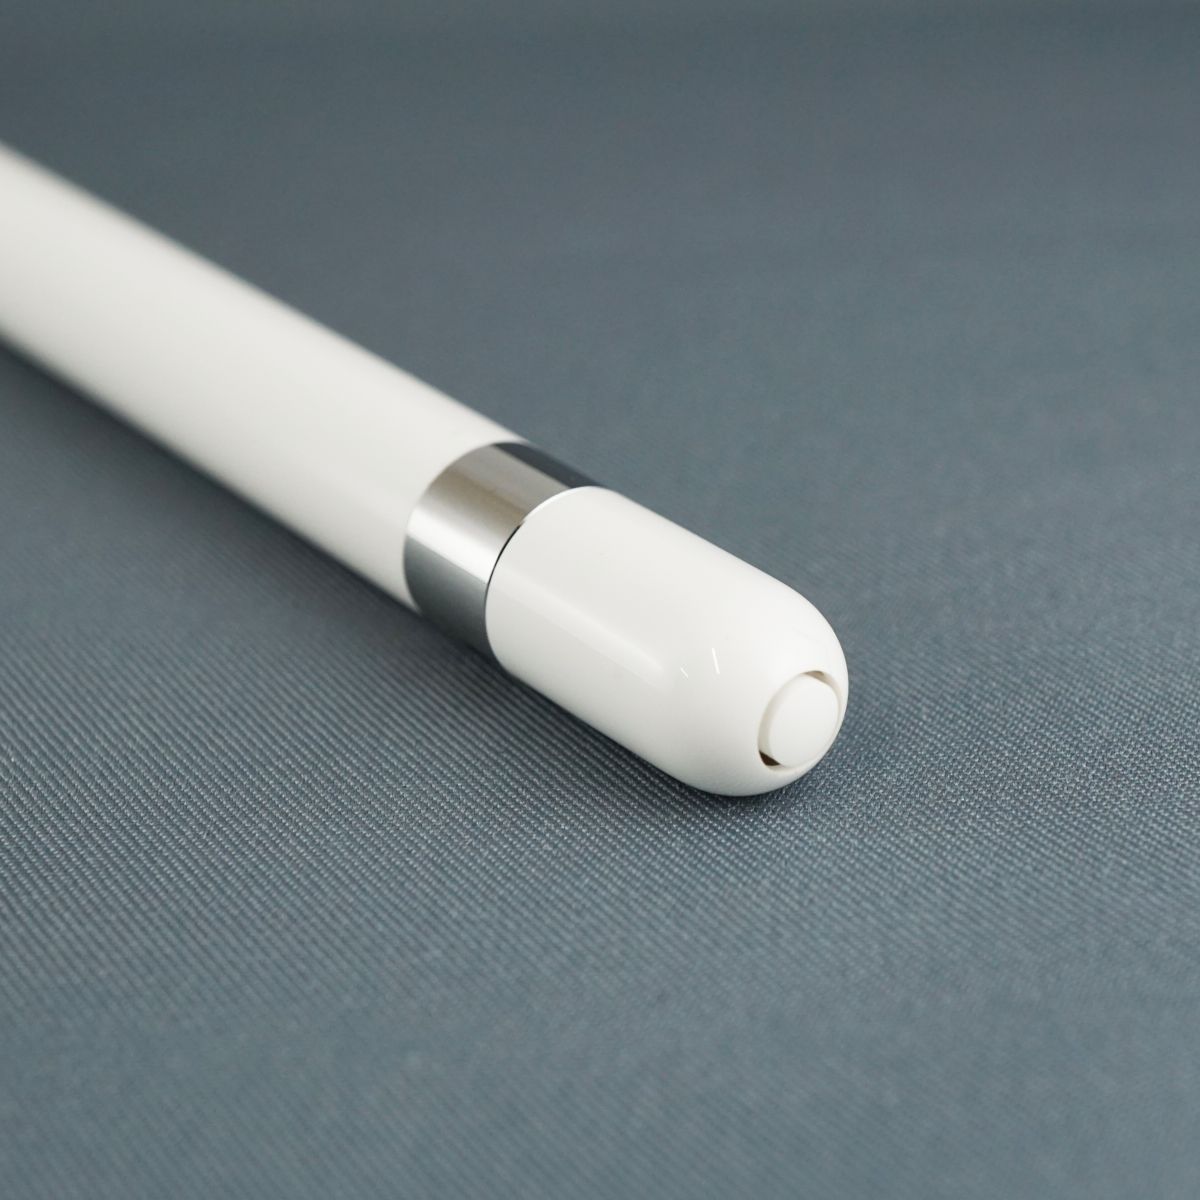 美品 即発送 Apple pencil アップルペンシル 第1世代 A1603